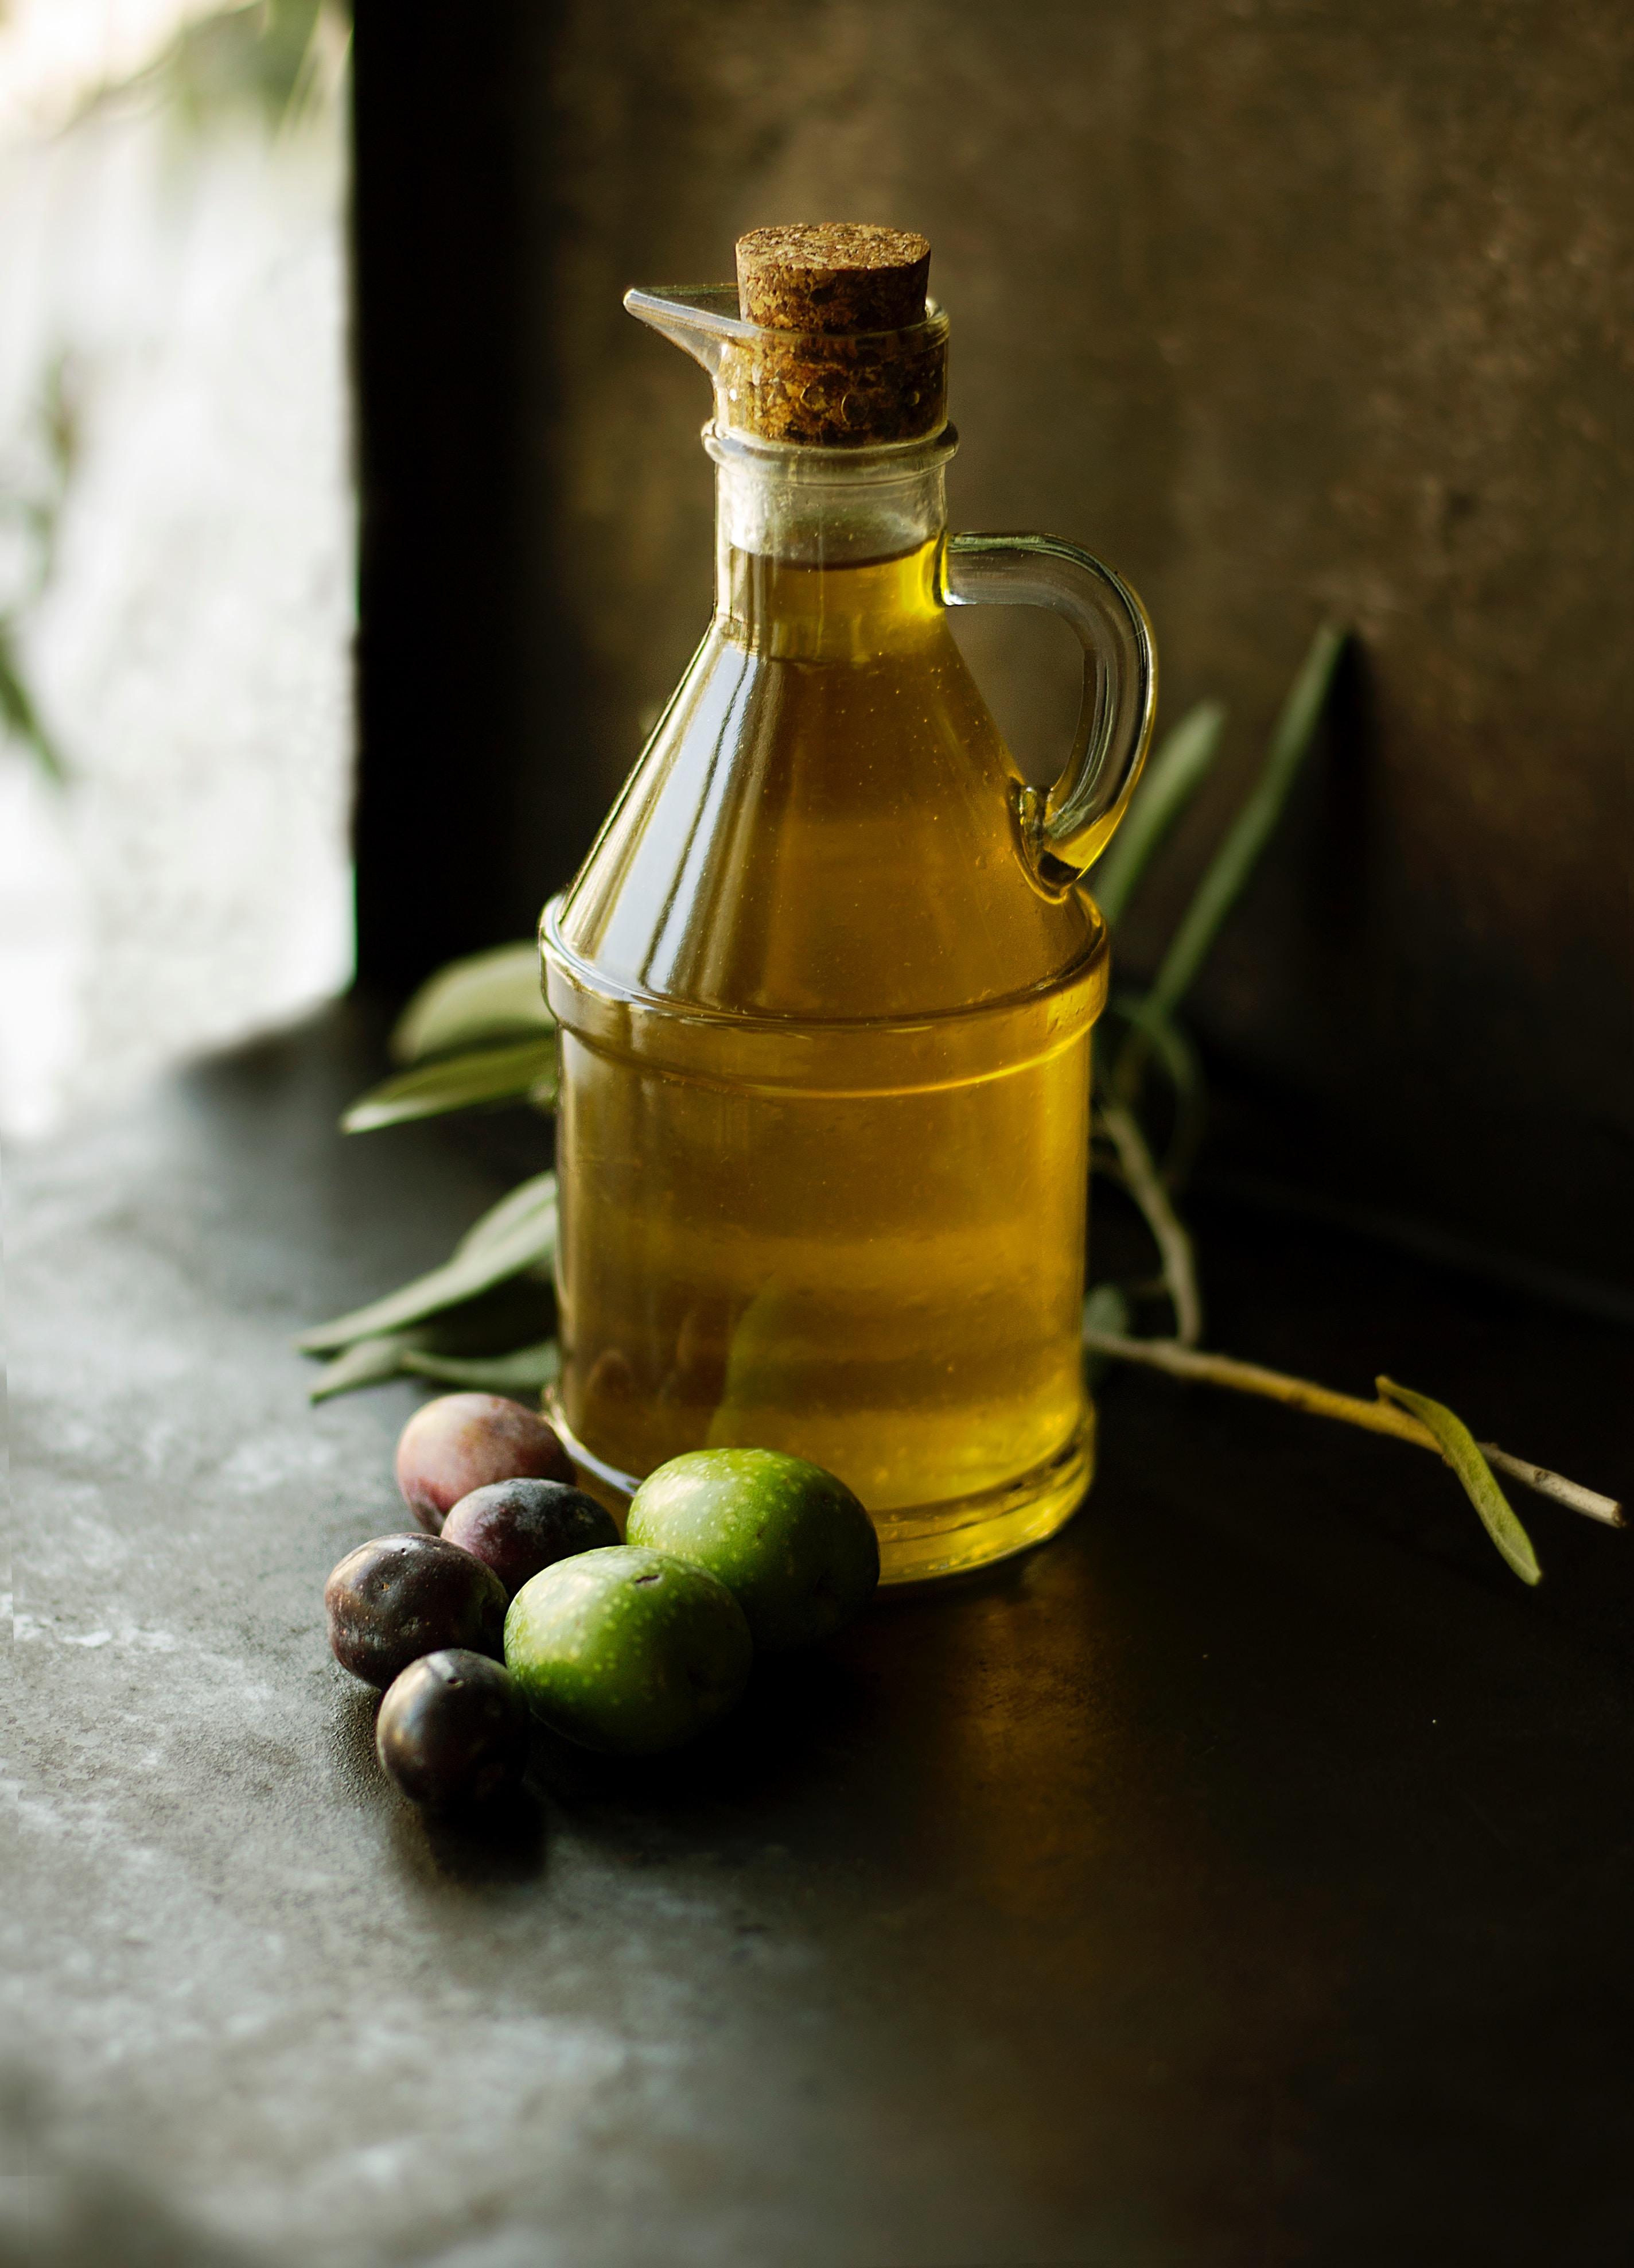 Naturalne właściwości i zastosowanie oleju lnianego - bogatego w kwasy tłuszczowe omega-3. Cudowne właściwości oleju lnianego i jego szerokie zastosowanie. Olej lniany: właściwości i zawartość kwasów omega-3 i omega-6 w oleju lnianym